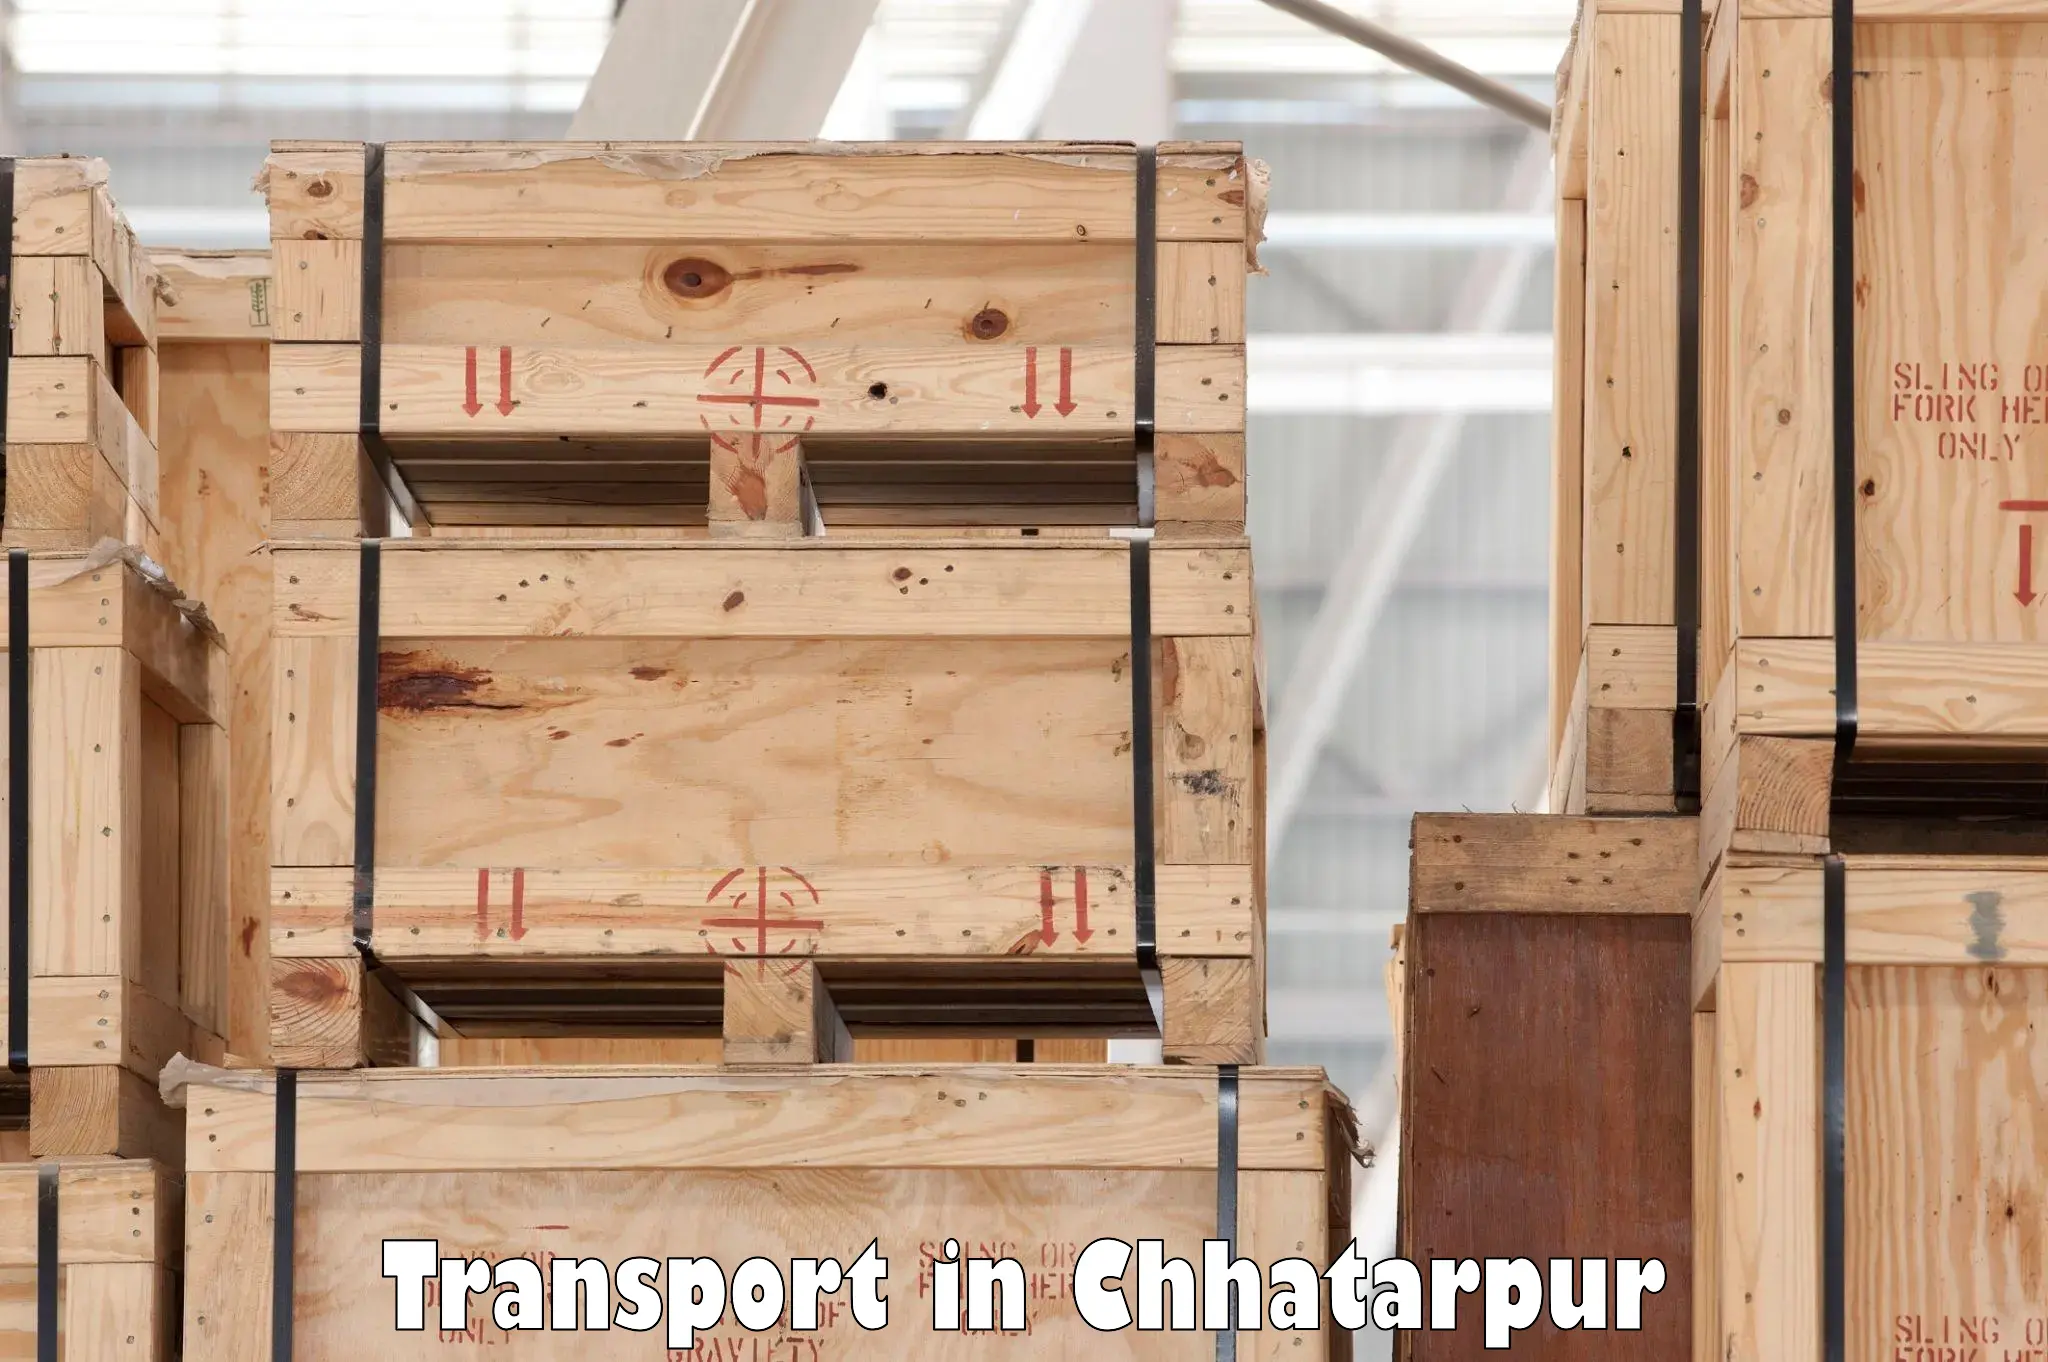 Door to door transport services in Chhatarpur